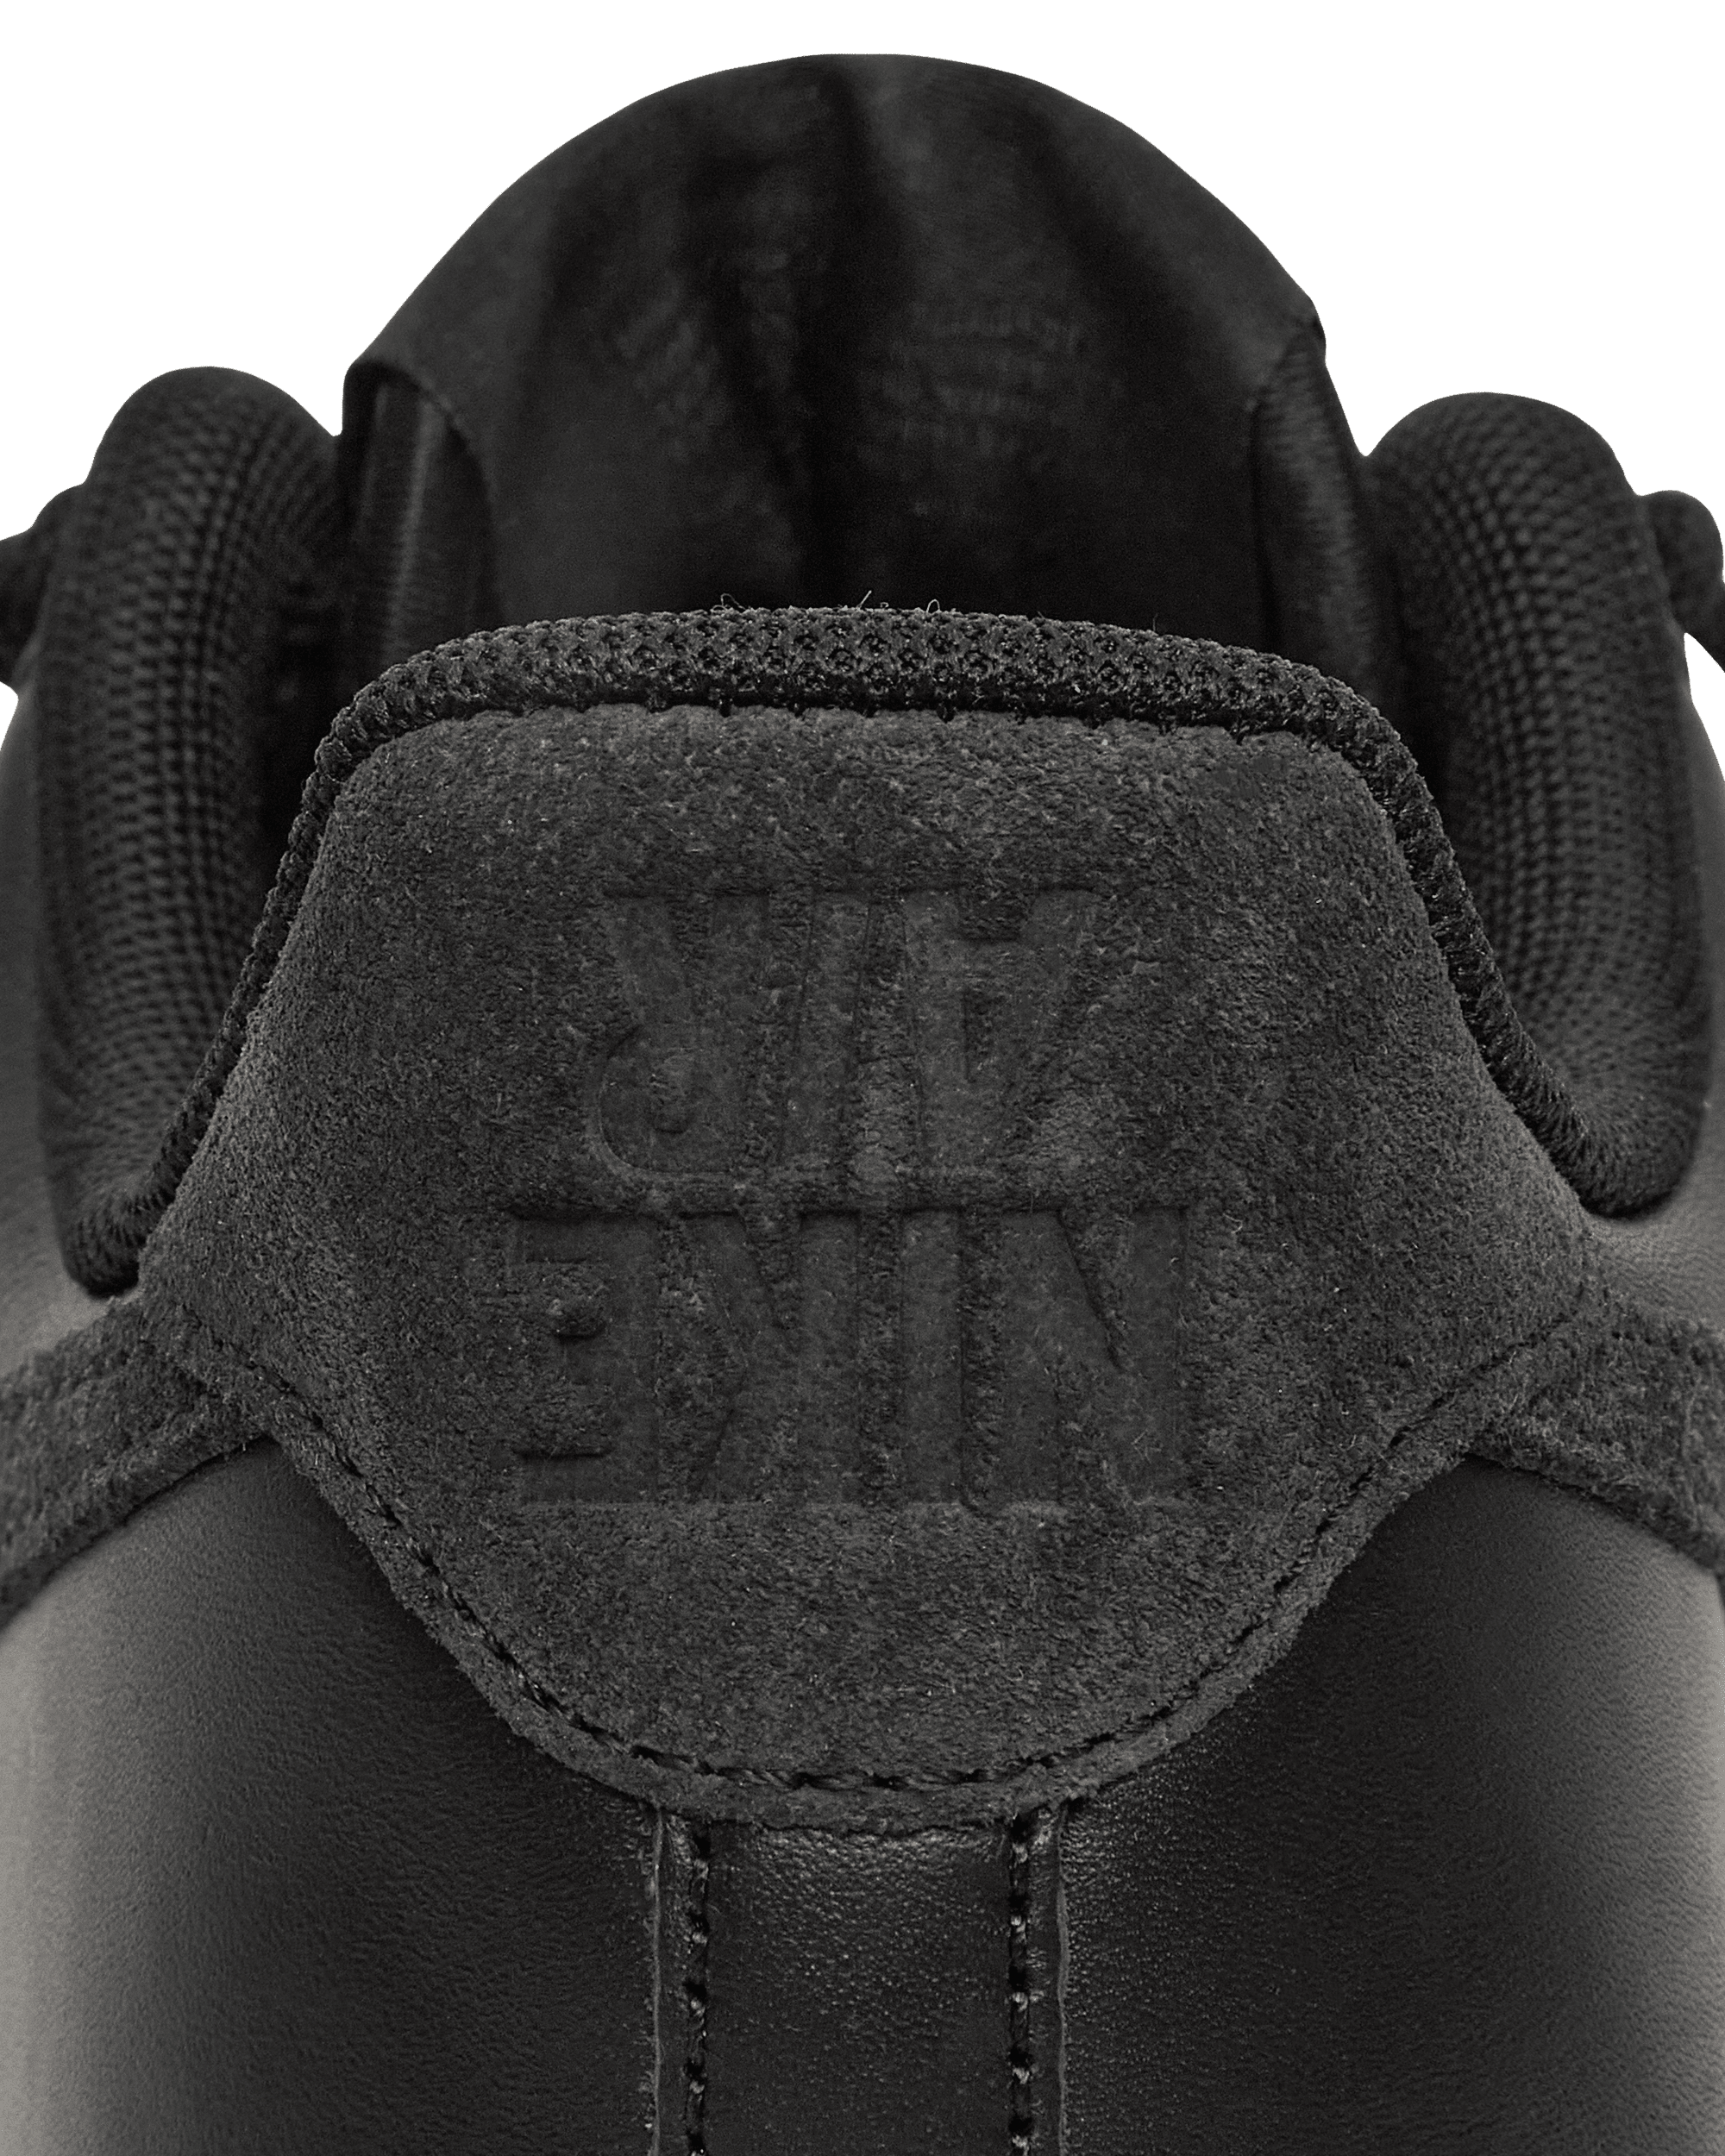 Nike Slam Jam Air Force 1 Low Sp Black/Off Noir Sneakers Low DX5590-001